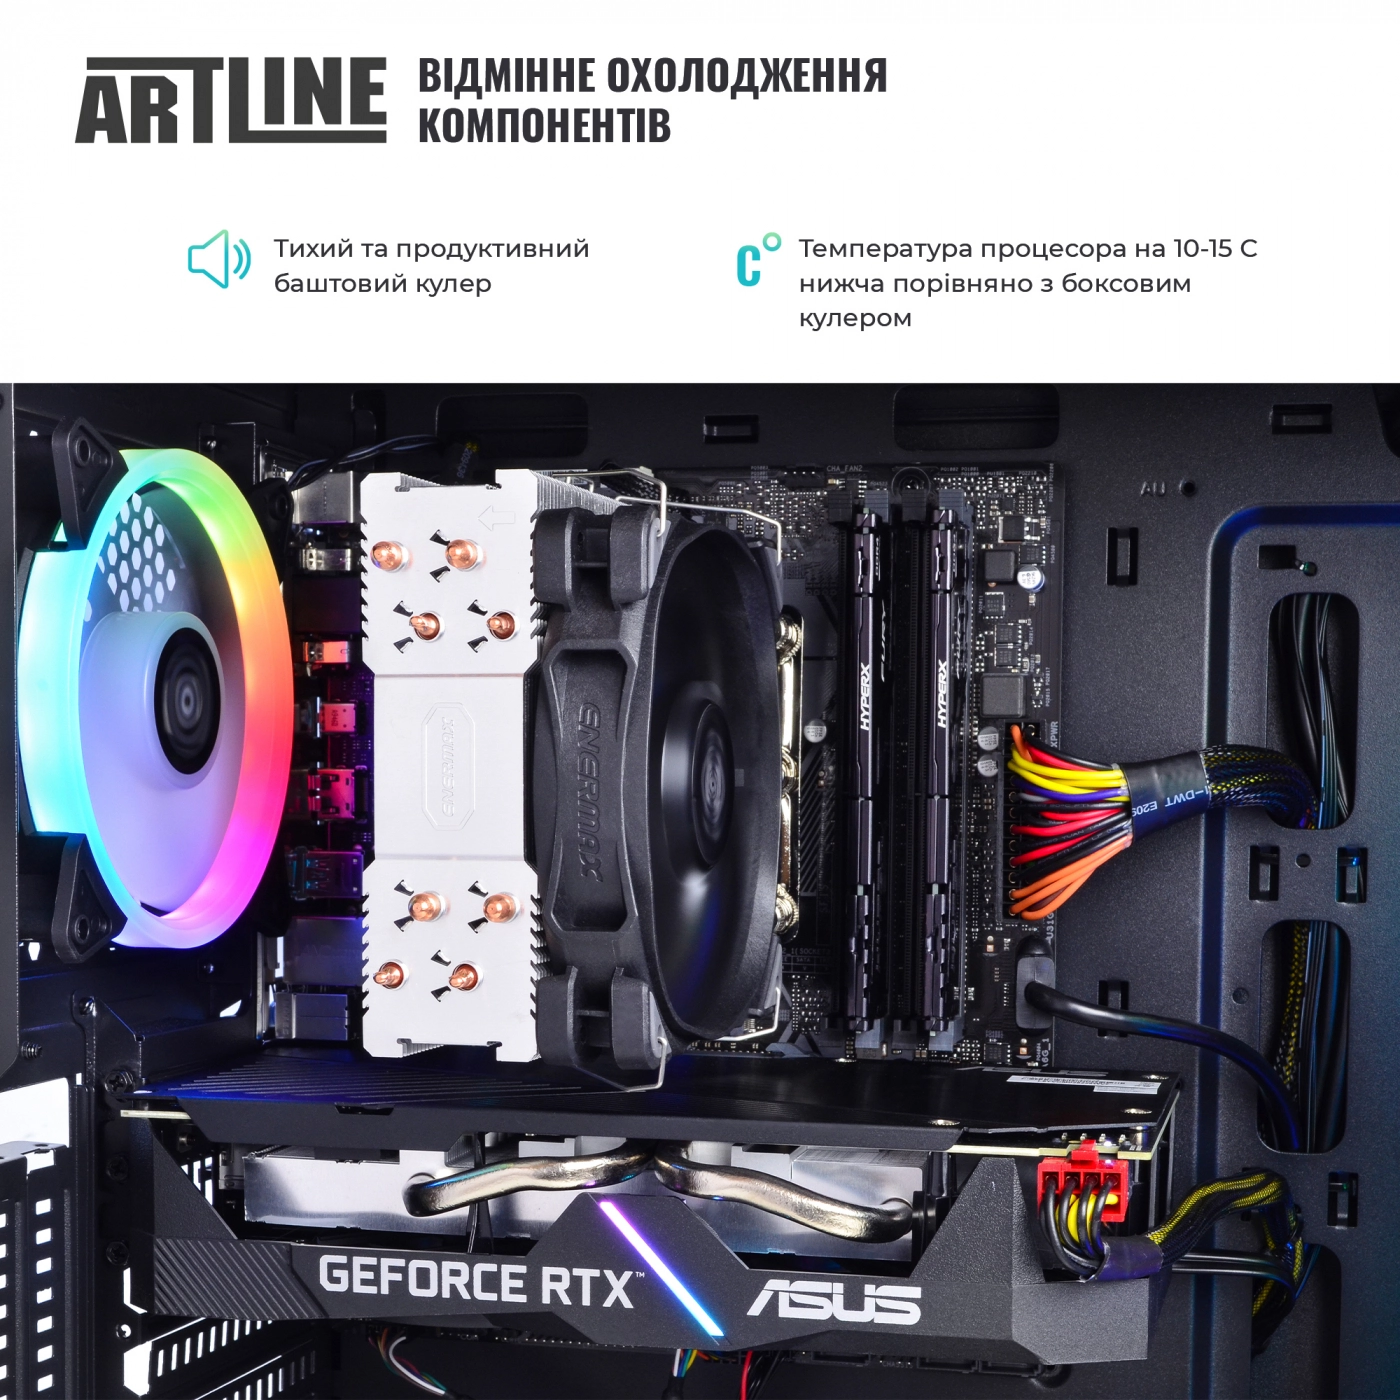 Купить Компьютер ARTLINE Gaming X90v11 - фото 3